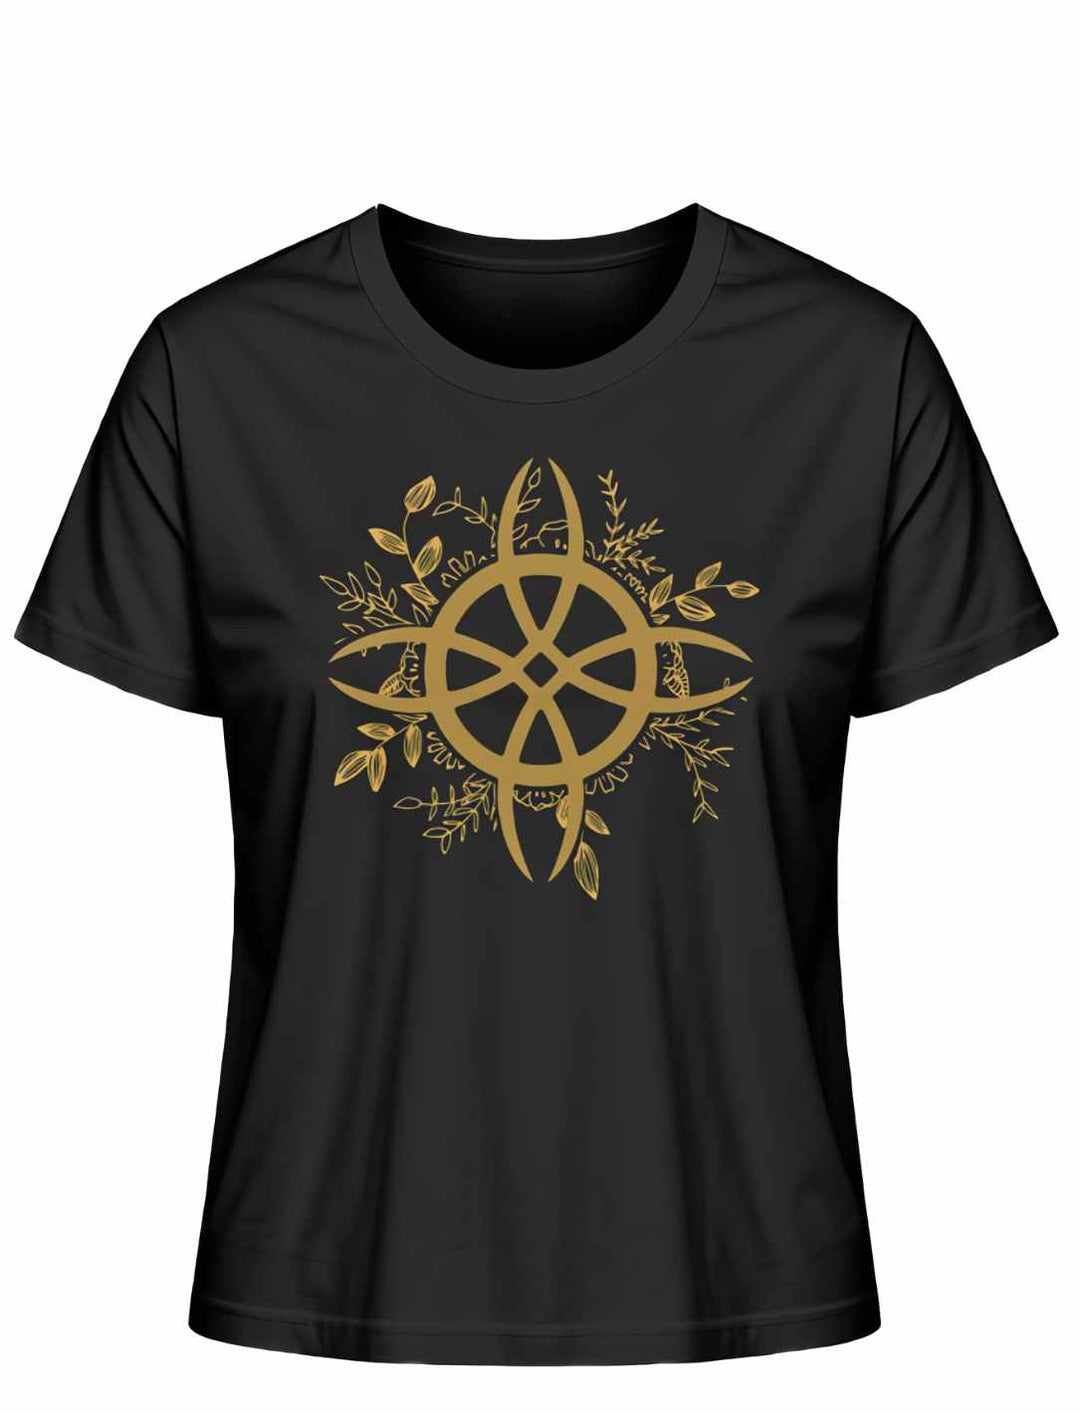 Schwarzes T-Shirt mit 'Zirkel der grünen Magie' Design, verkörpert die tiefe Verbindung zwischen Magie und Natur, ideal für selbstbewusste Frauen.